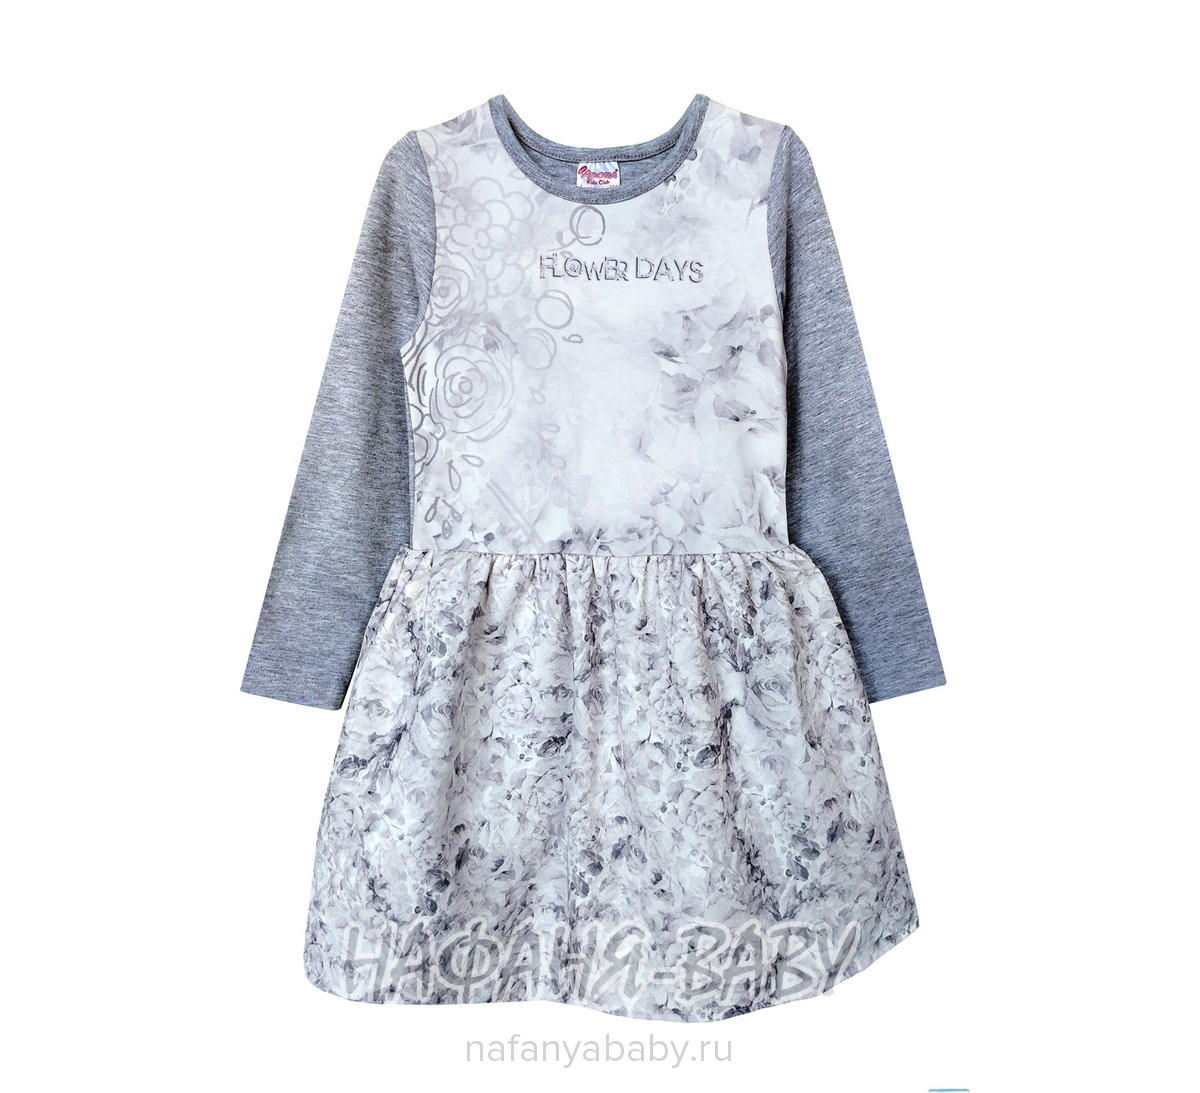 Детское нарядное платье ADORA, купить в интернет магазине Нафаня. арт: 239.